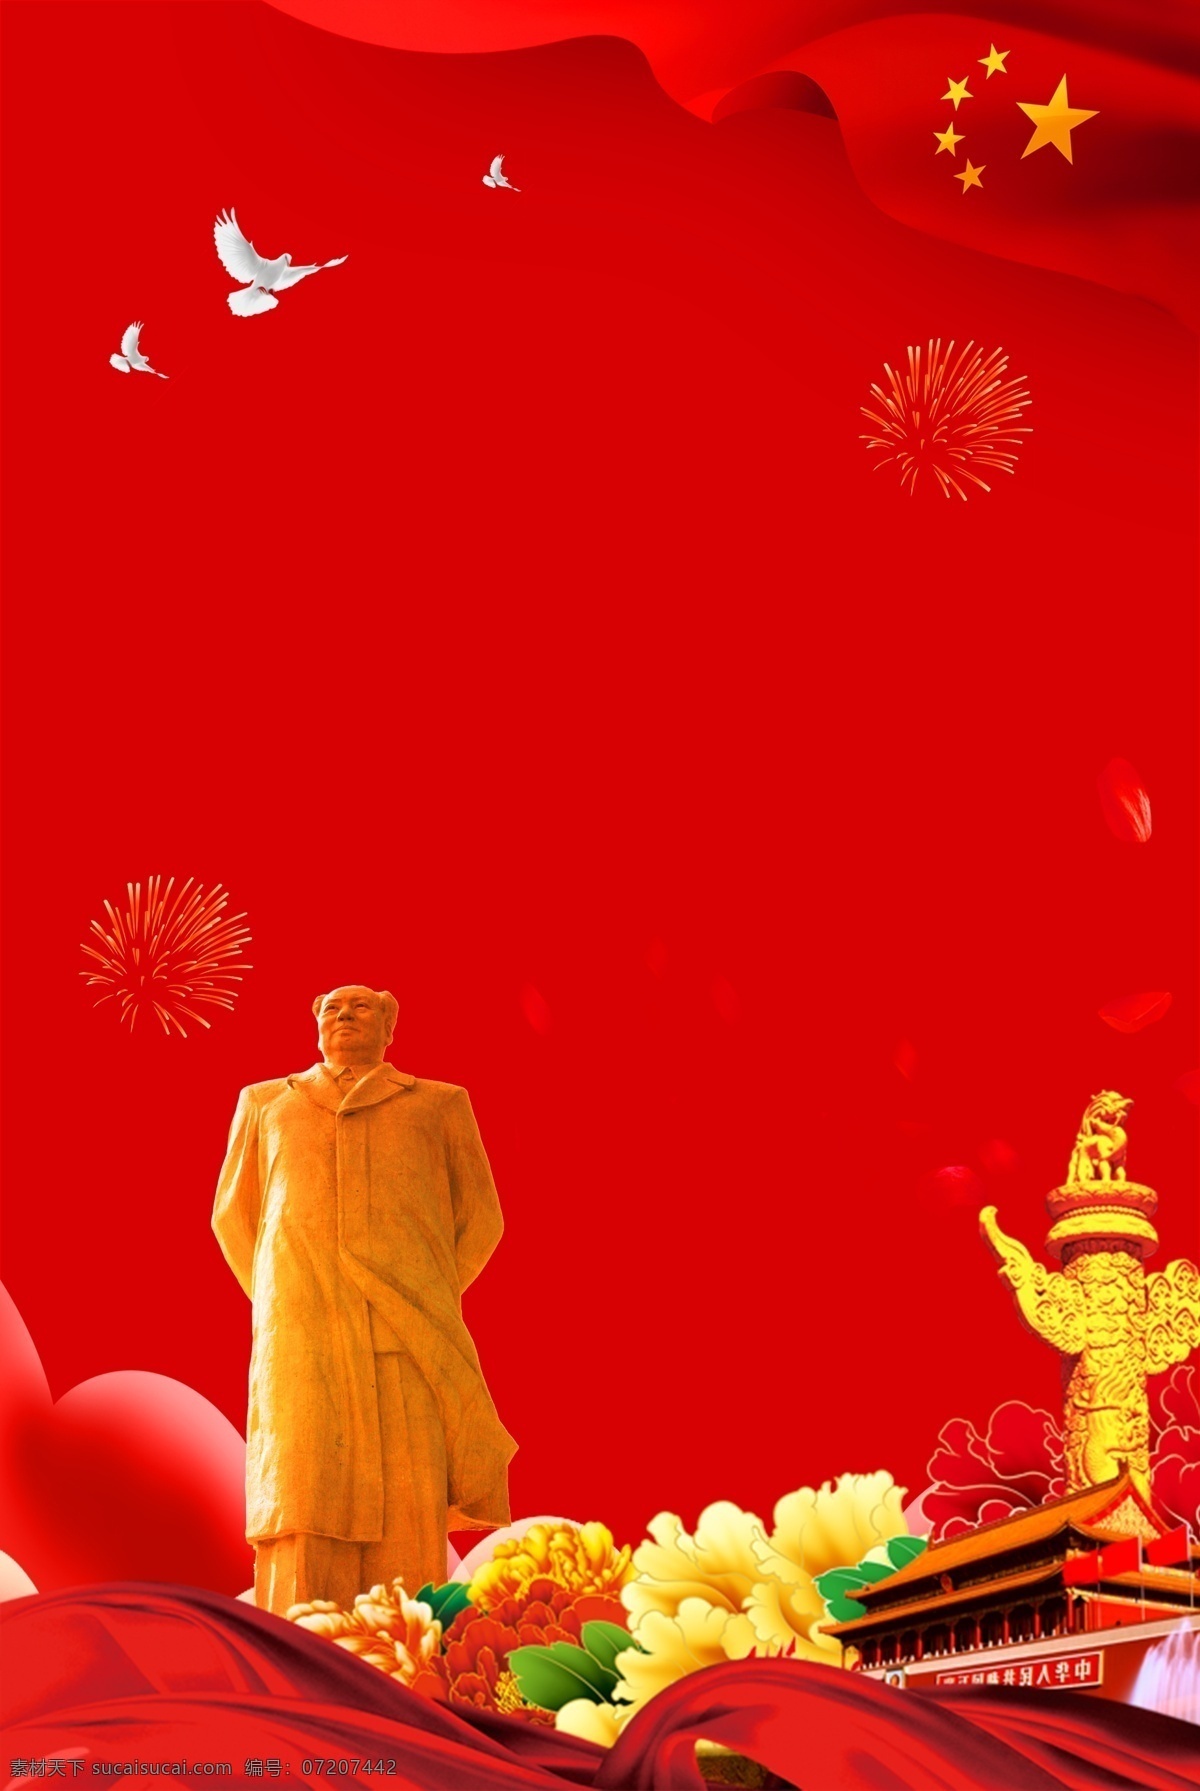 毛泽东 诞辰 红色 天安门 花朵 海报 毛泽东诞辰 纪念 怀念 党建 毛泽东雕塑 和平鸽 五星红旗